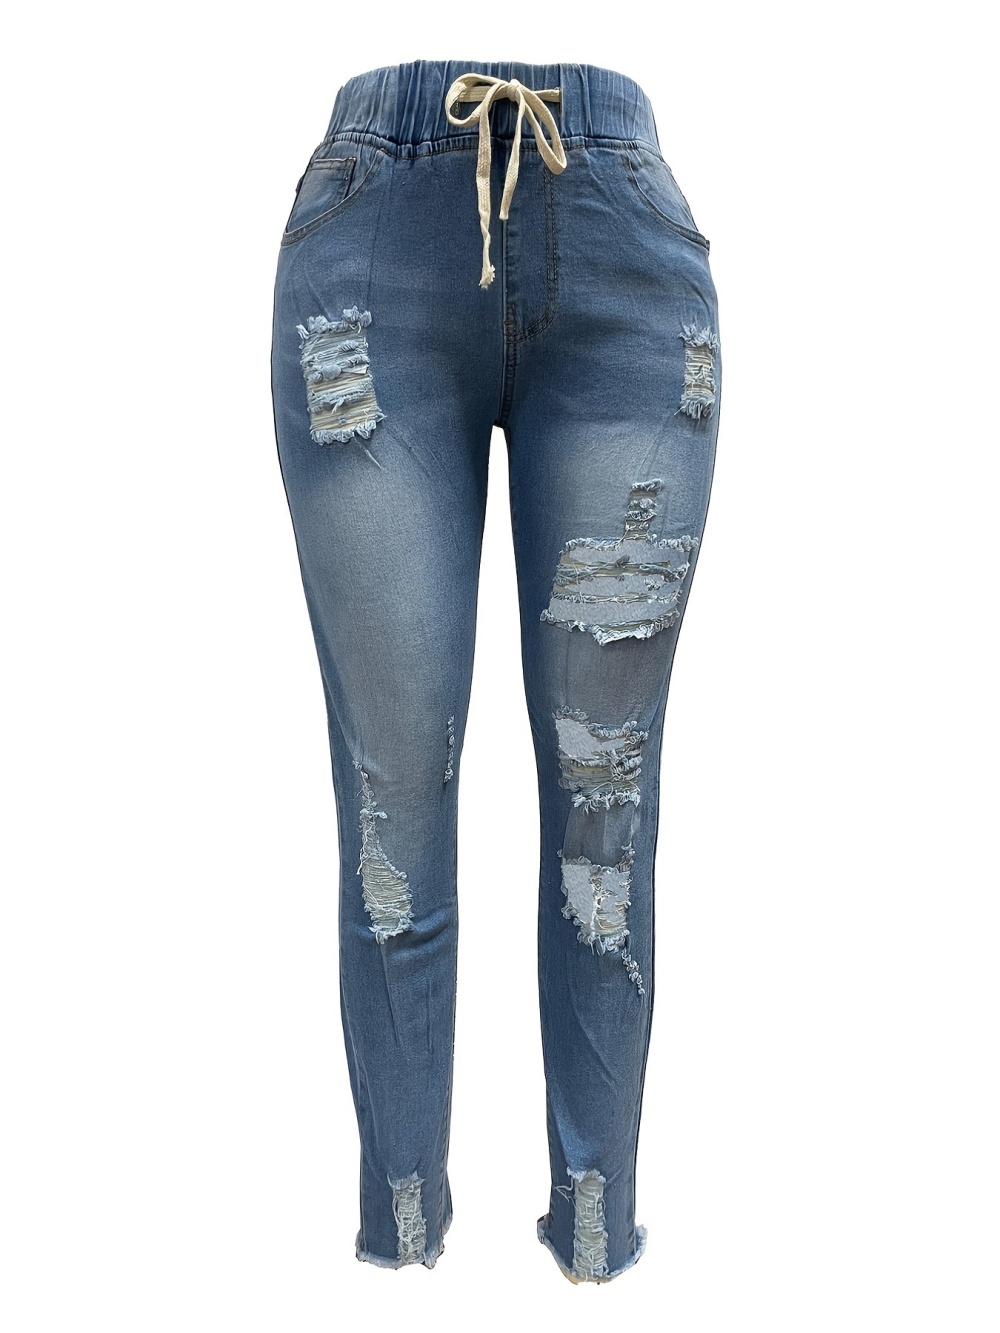 European style jeans denim pencil pants for women